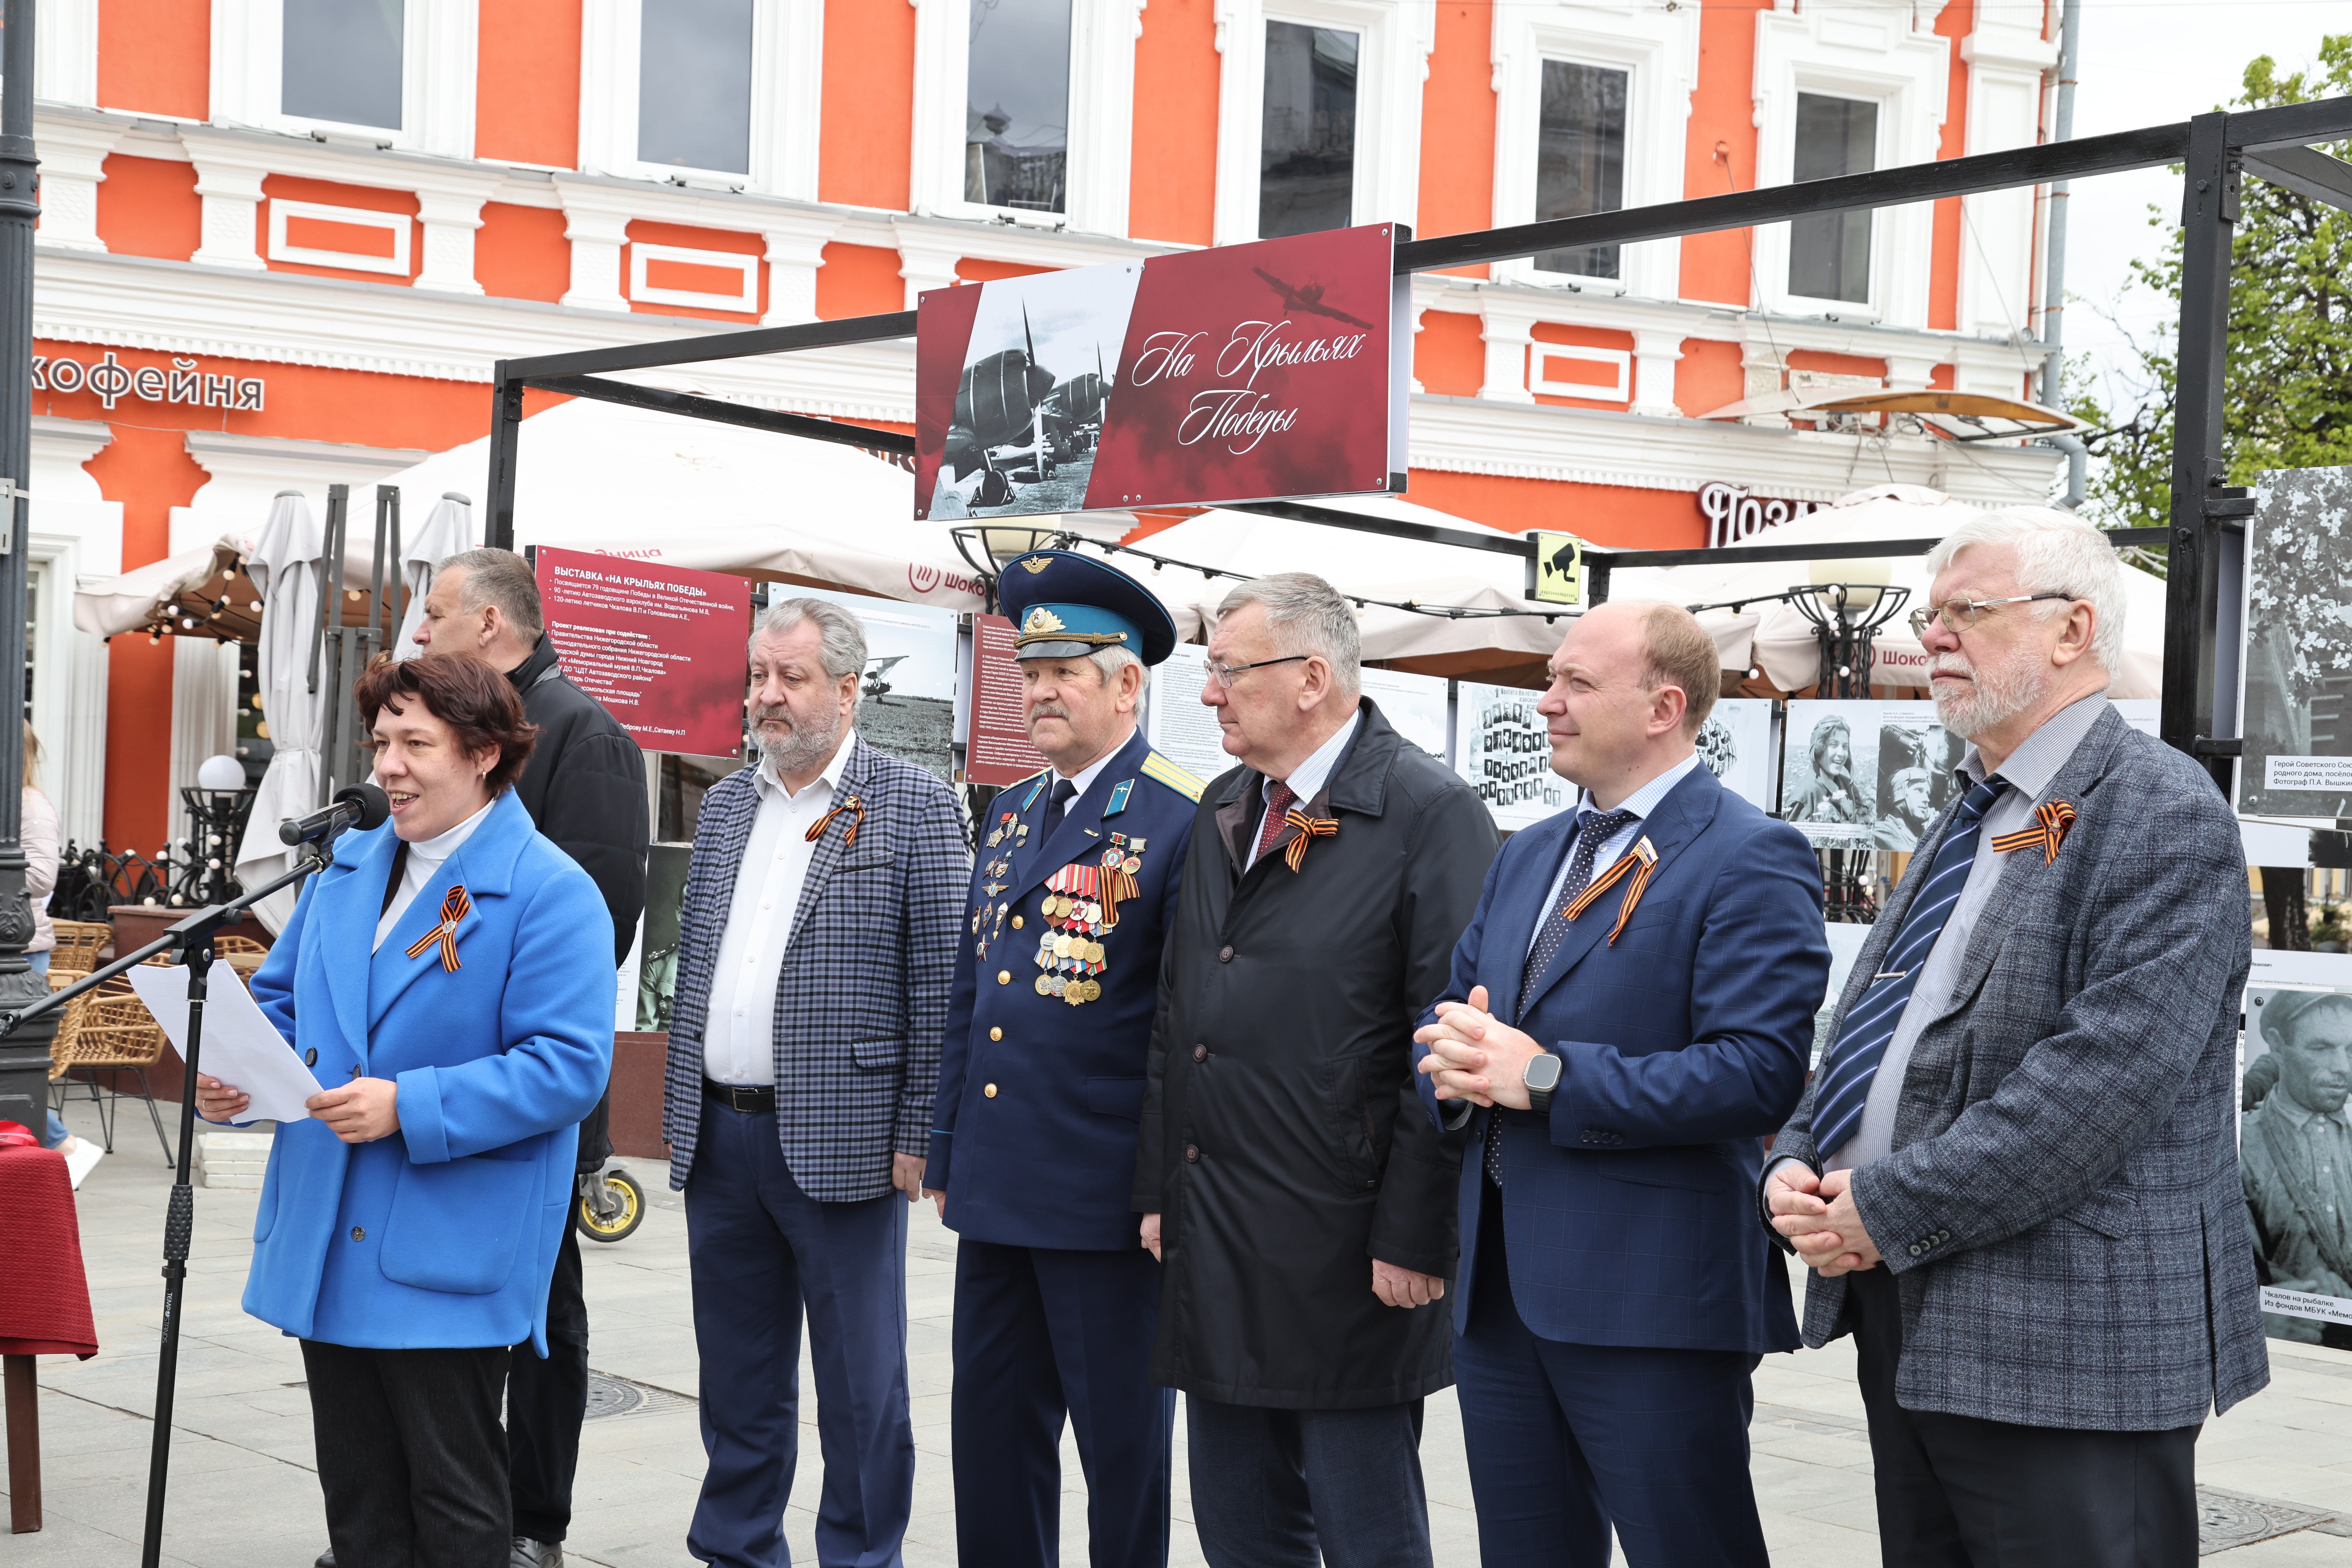  Члены Общественной палаты Нижнего Новгорода приняли участие в организации мемориальной выставки «На крыльях Победы»